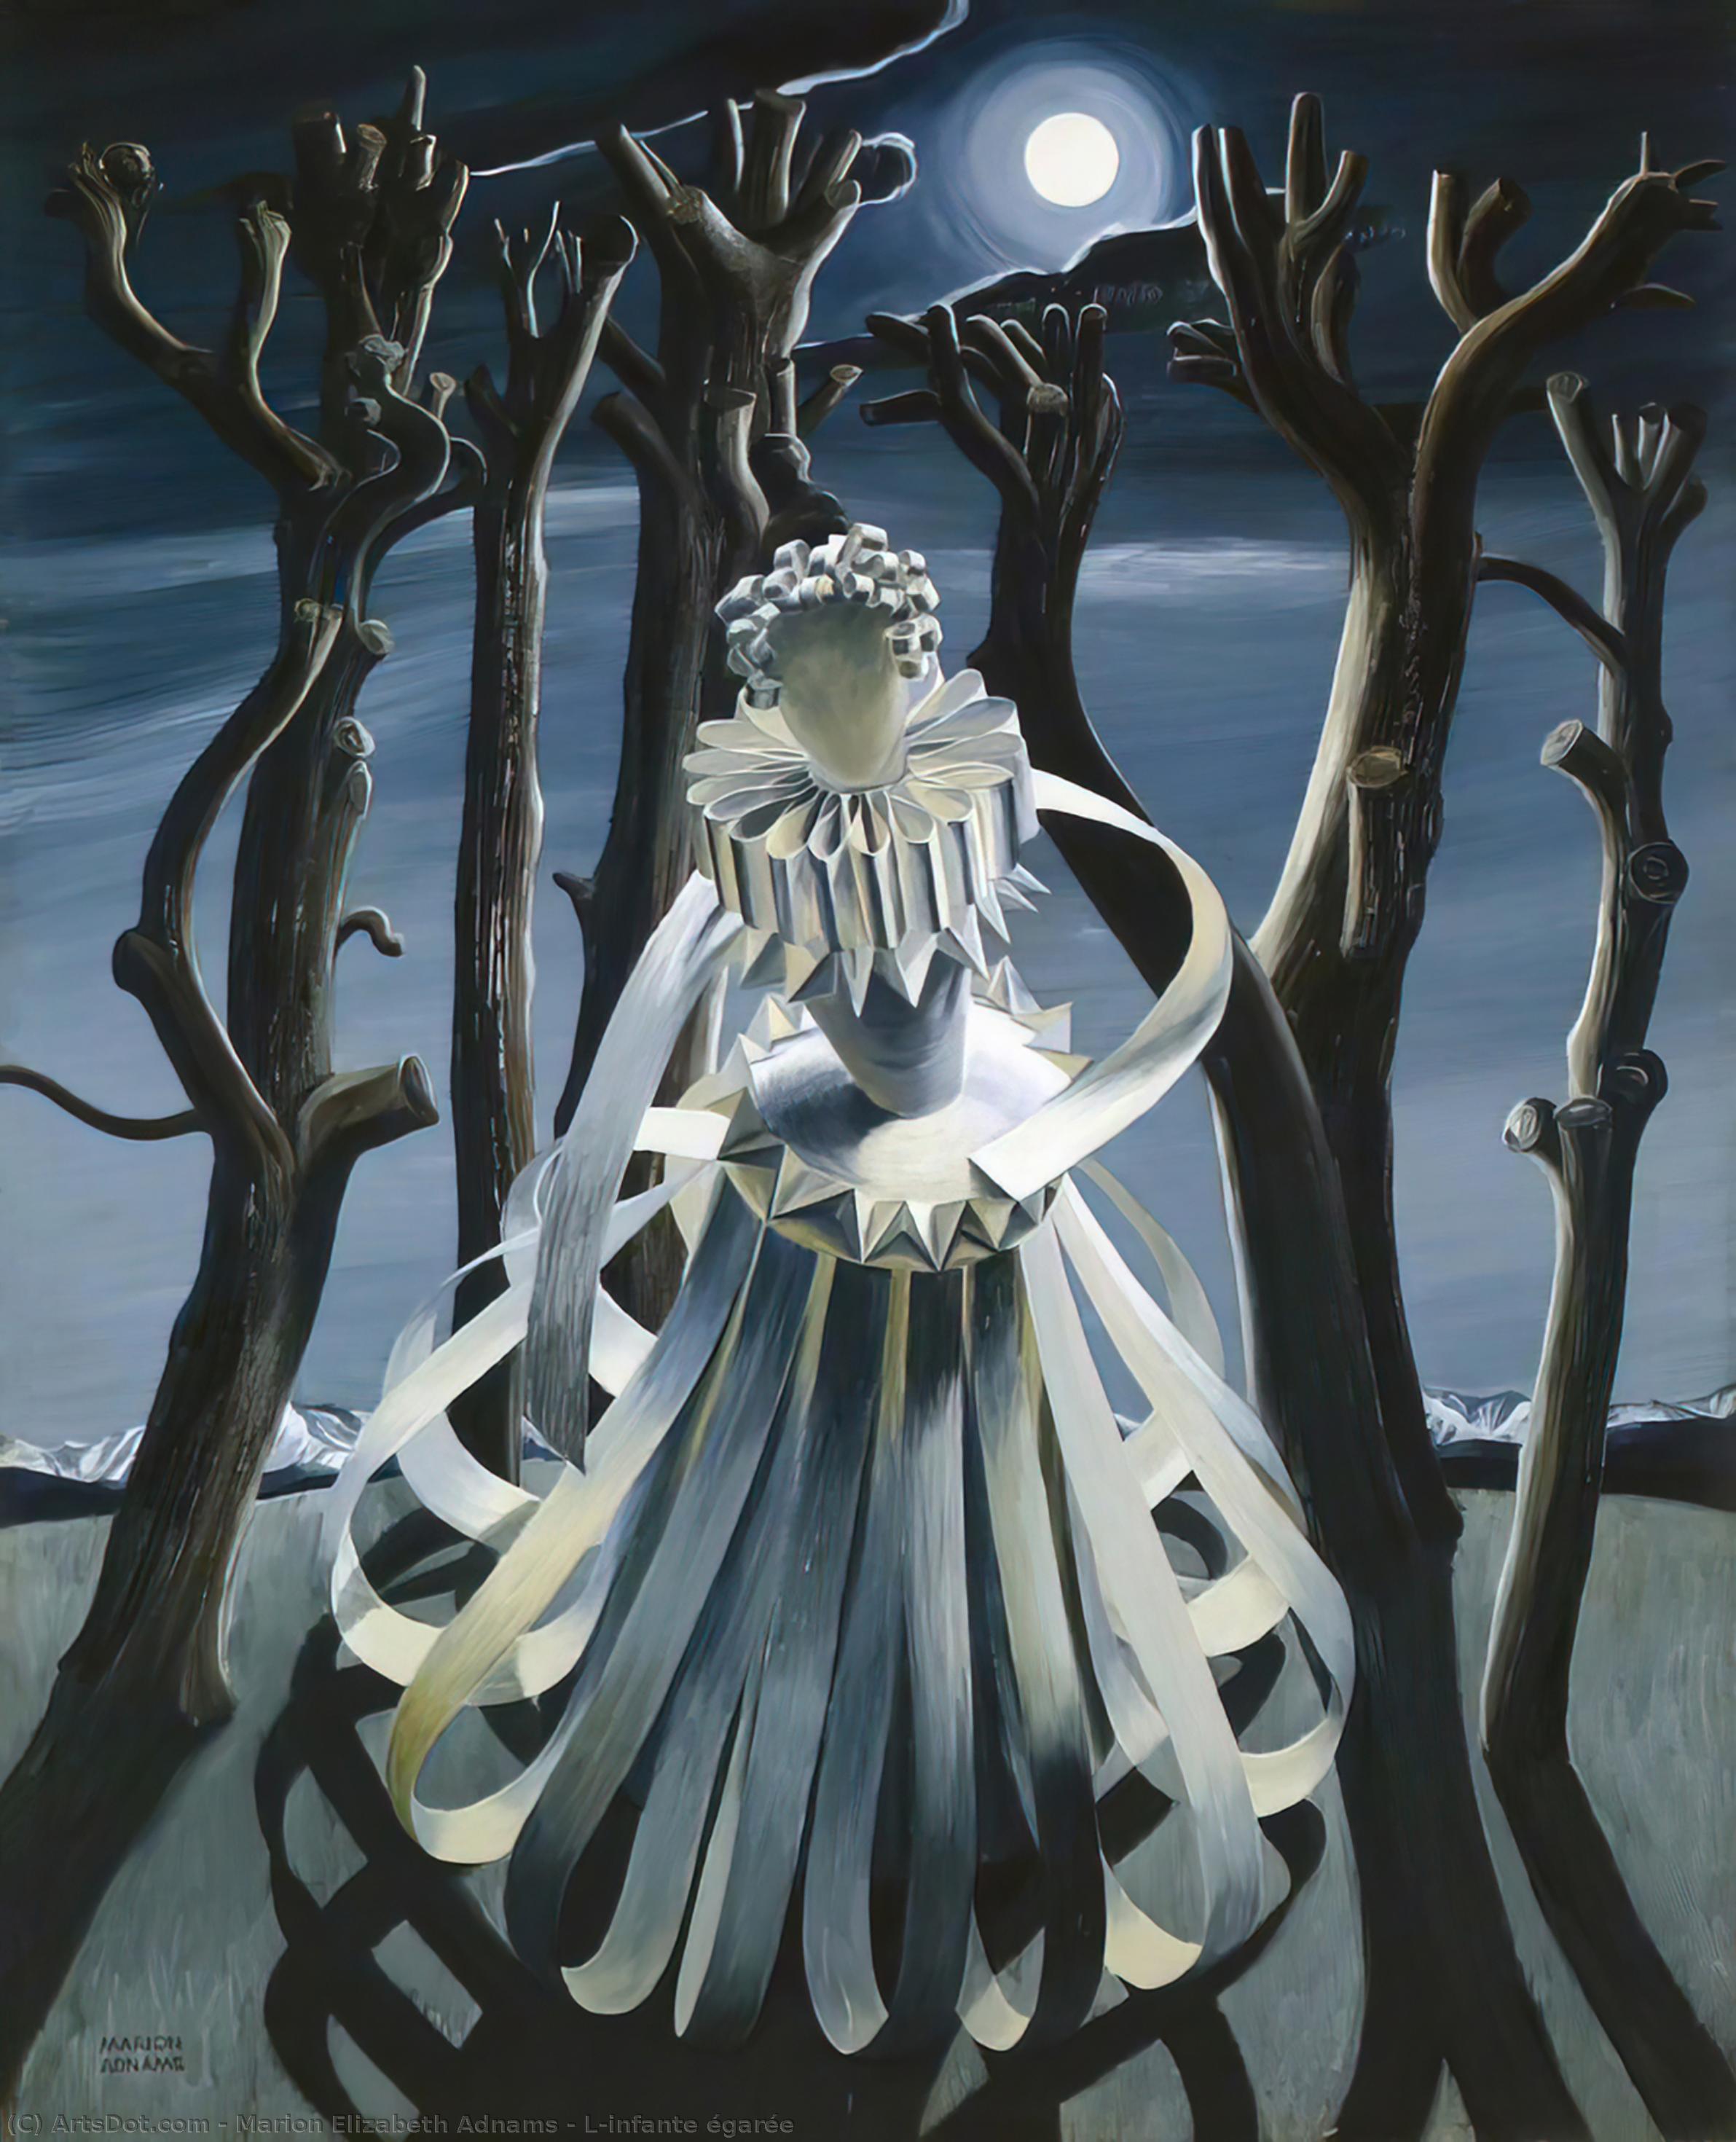 WikiOO.org - Εγκυκλοπαίδεια Καλών Τεχνών - Ζωγραφική, έργα τέχνης Marion Elizabeth Adnams - The Lost Infanta